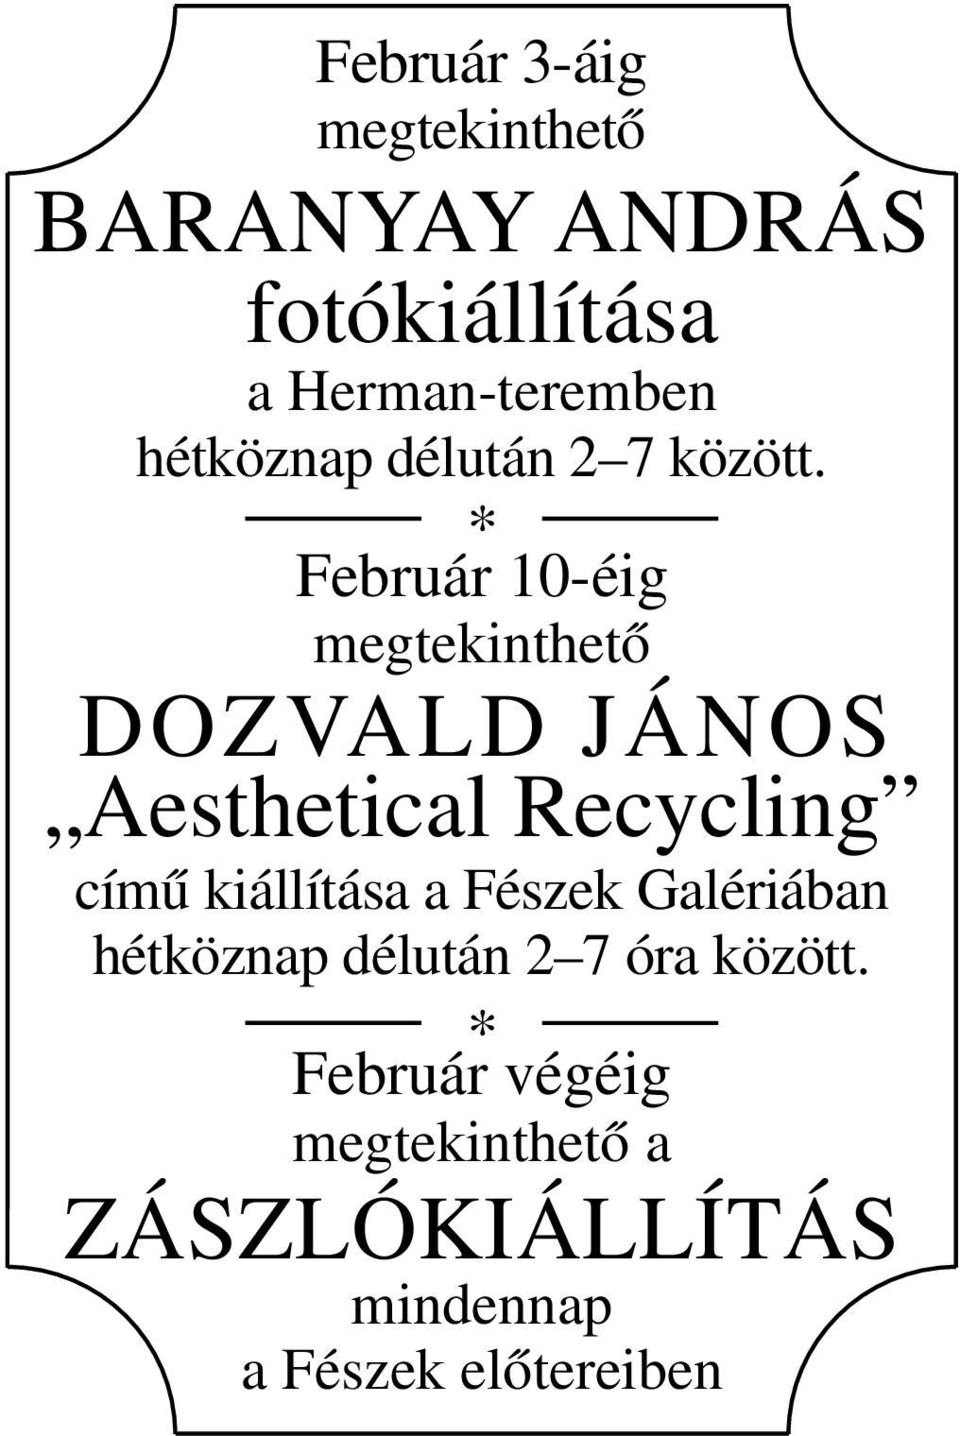 * Február 10-éig megtekinthető DOZVALD JÁNOS Aesthetical Recycling című